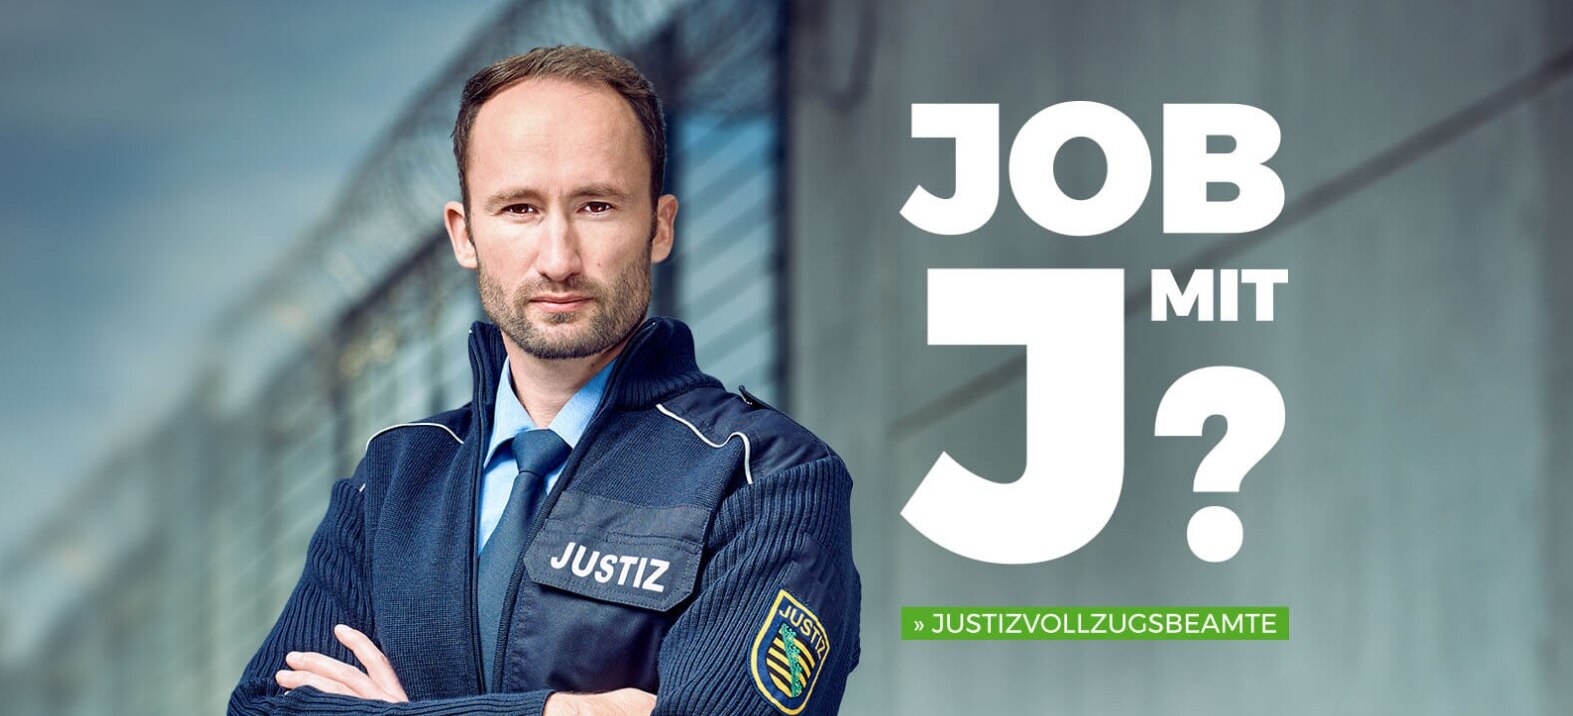 Titelbild der Kampagne Job mit J